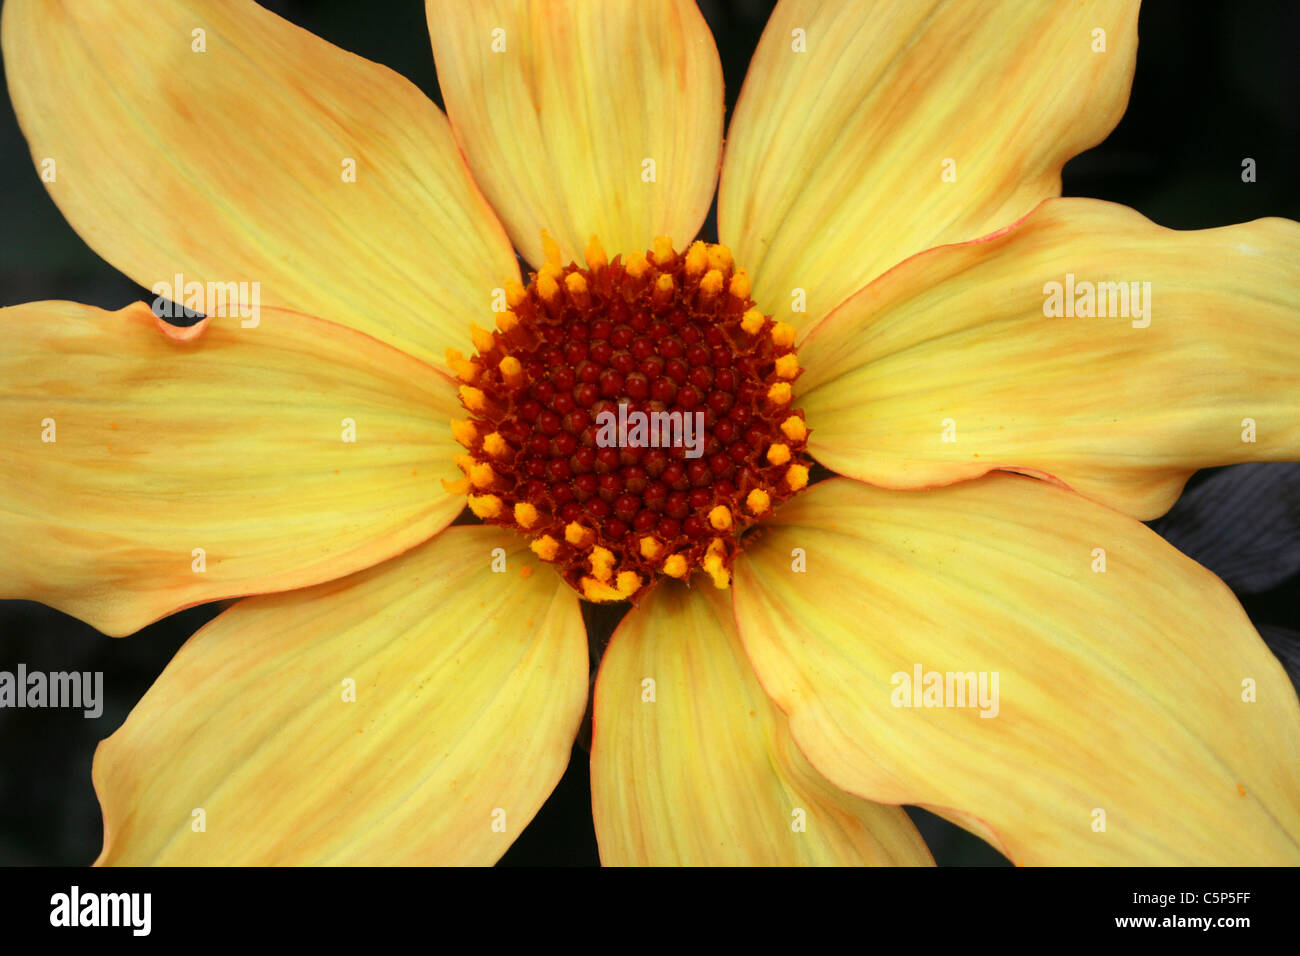 Detalle de una flor amarilla Foto de stock